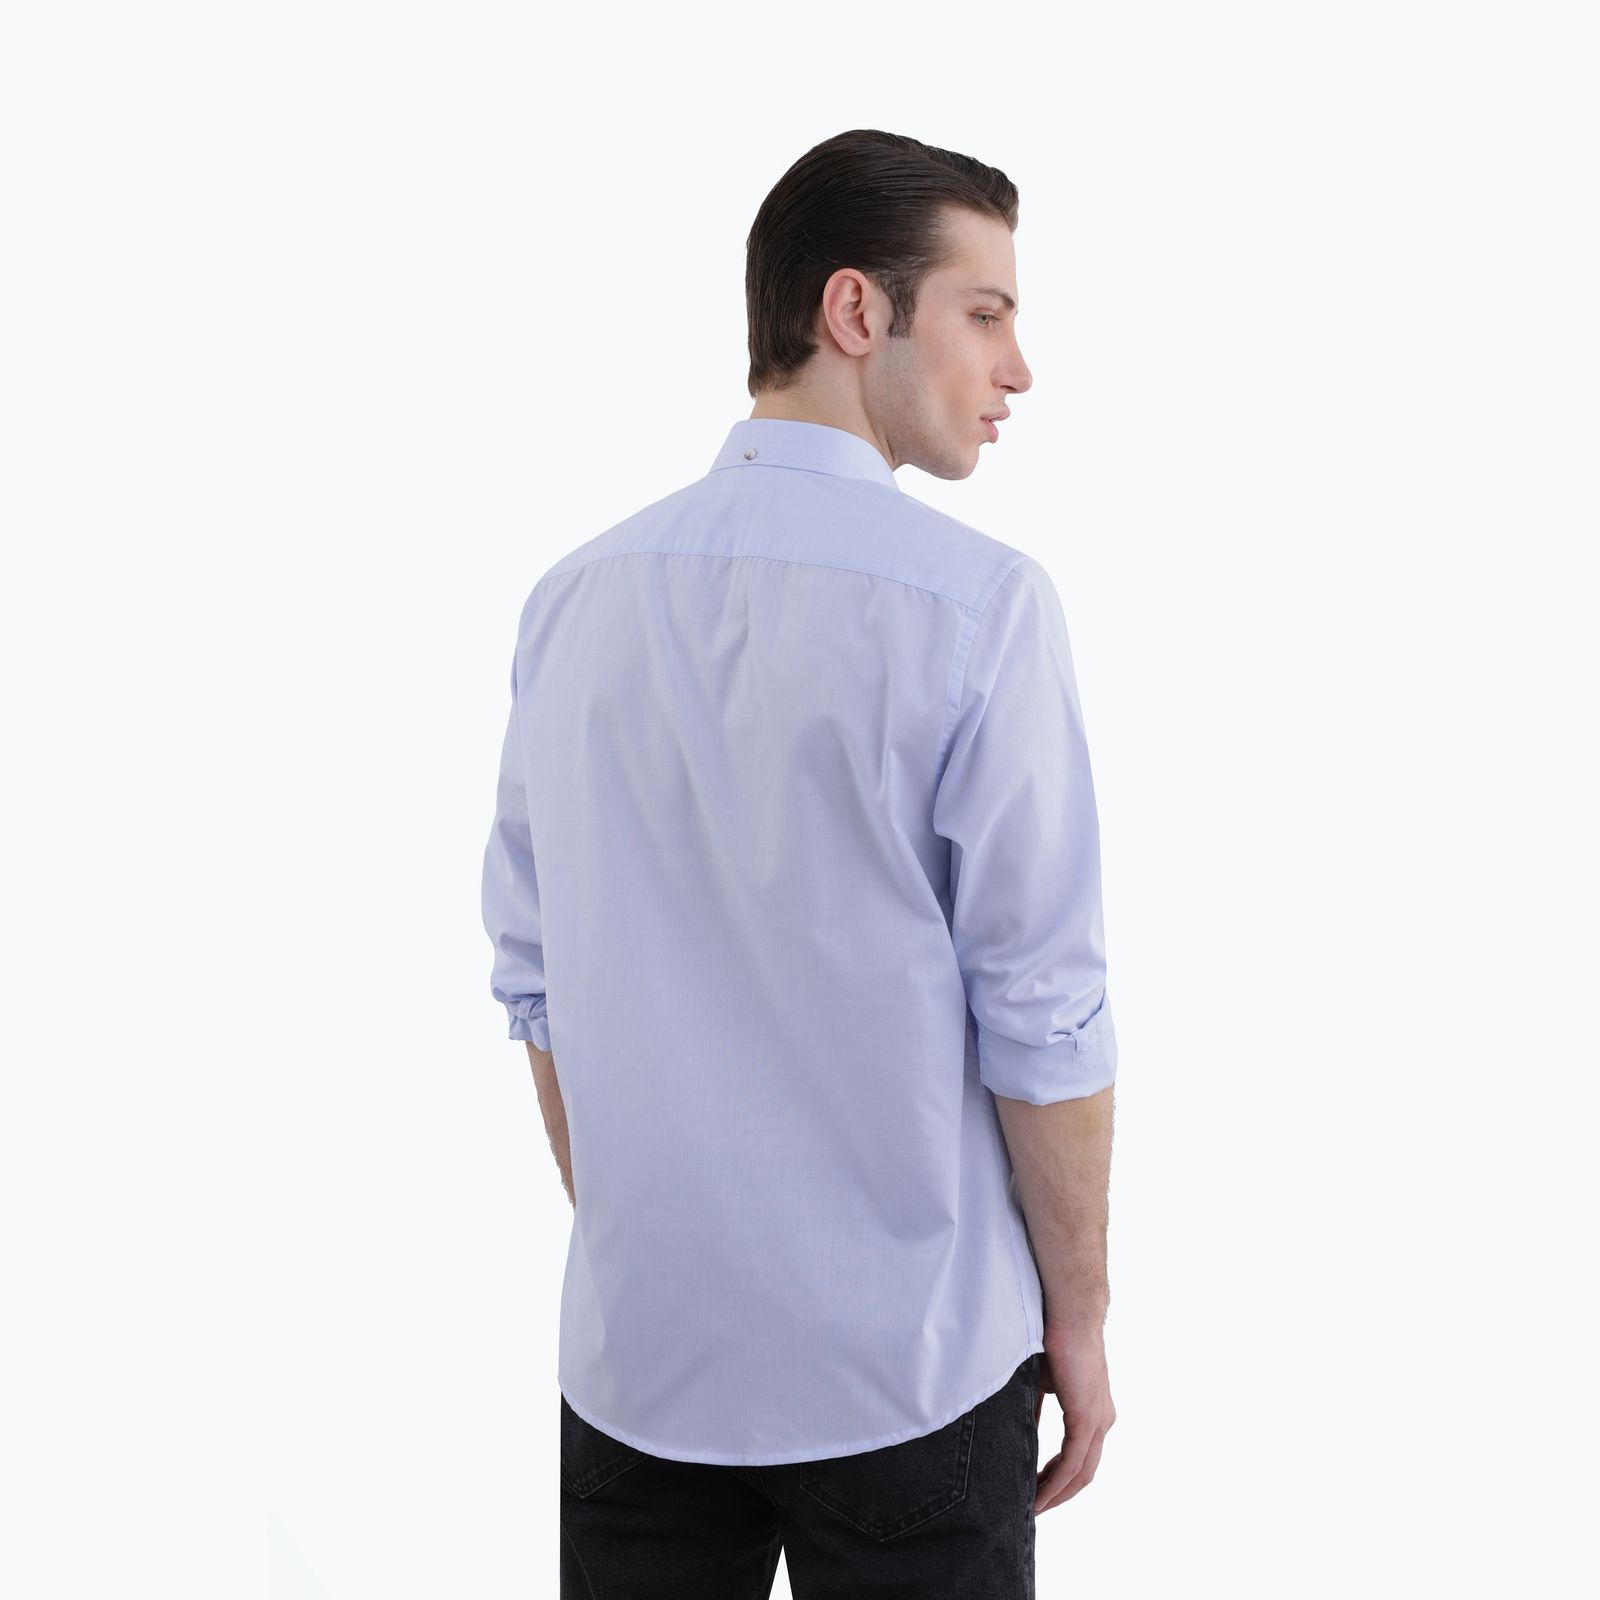 پیراهن آستین بلند مردانه پاتن جامه مدل 102721020300304 -  - 5